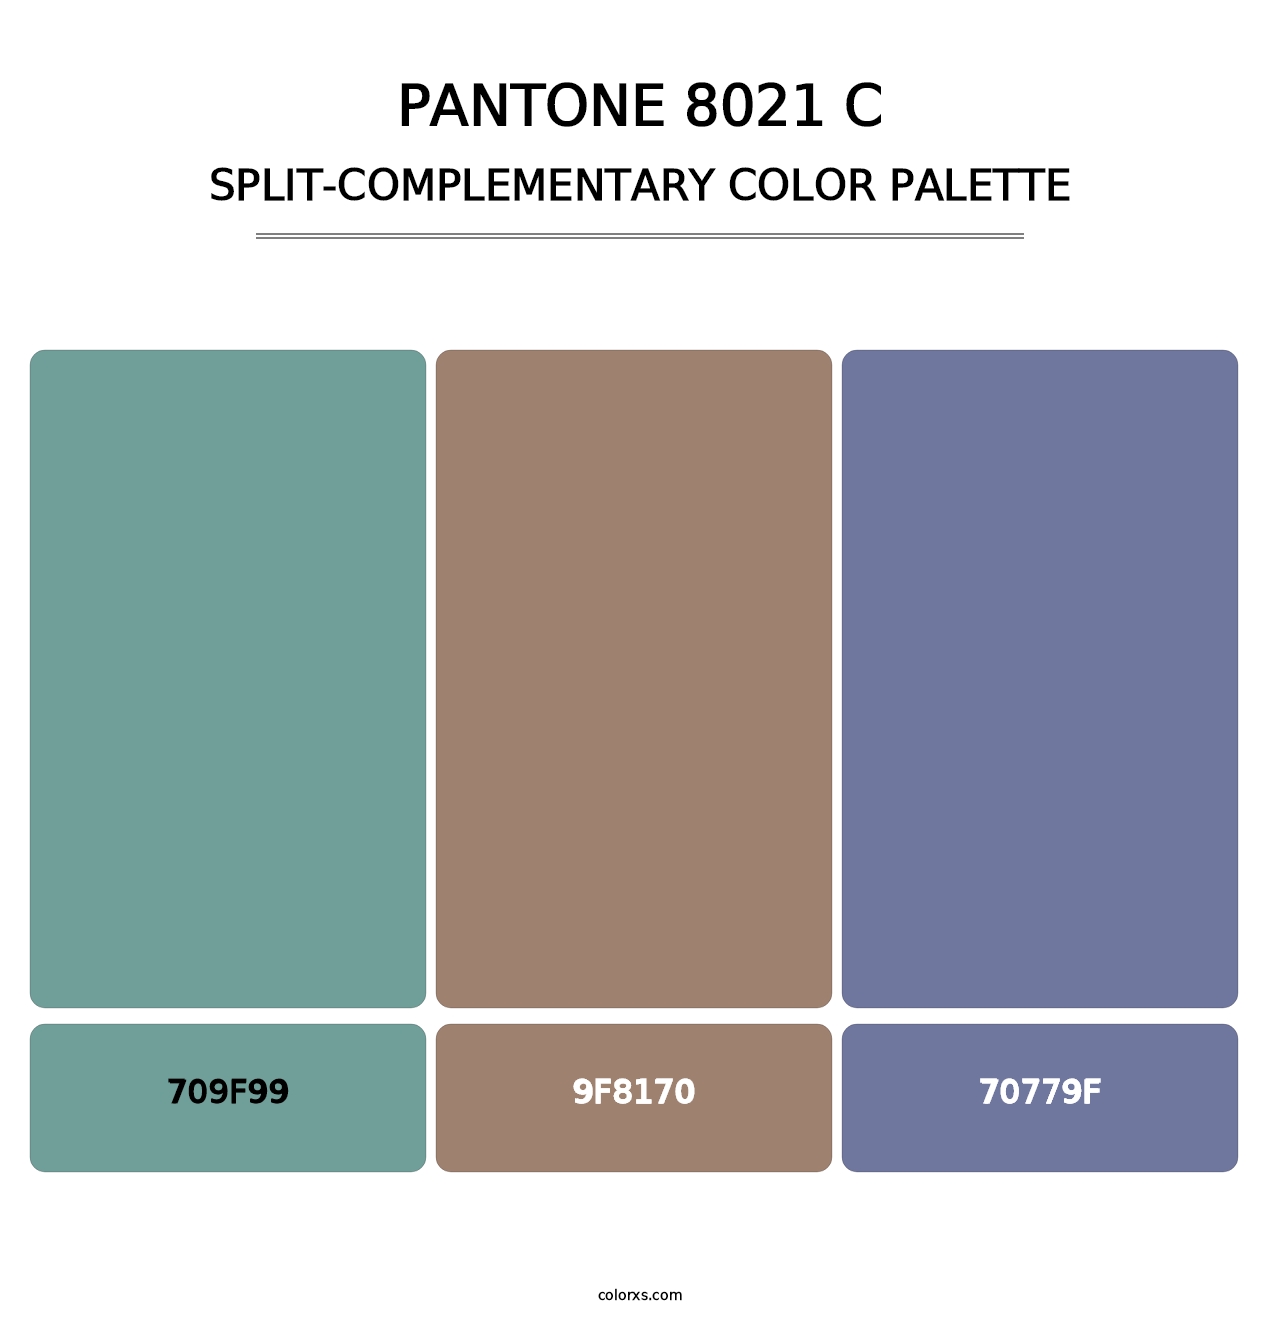 PANTONE 8021 C - Split-Complementary Color Palette